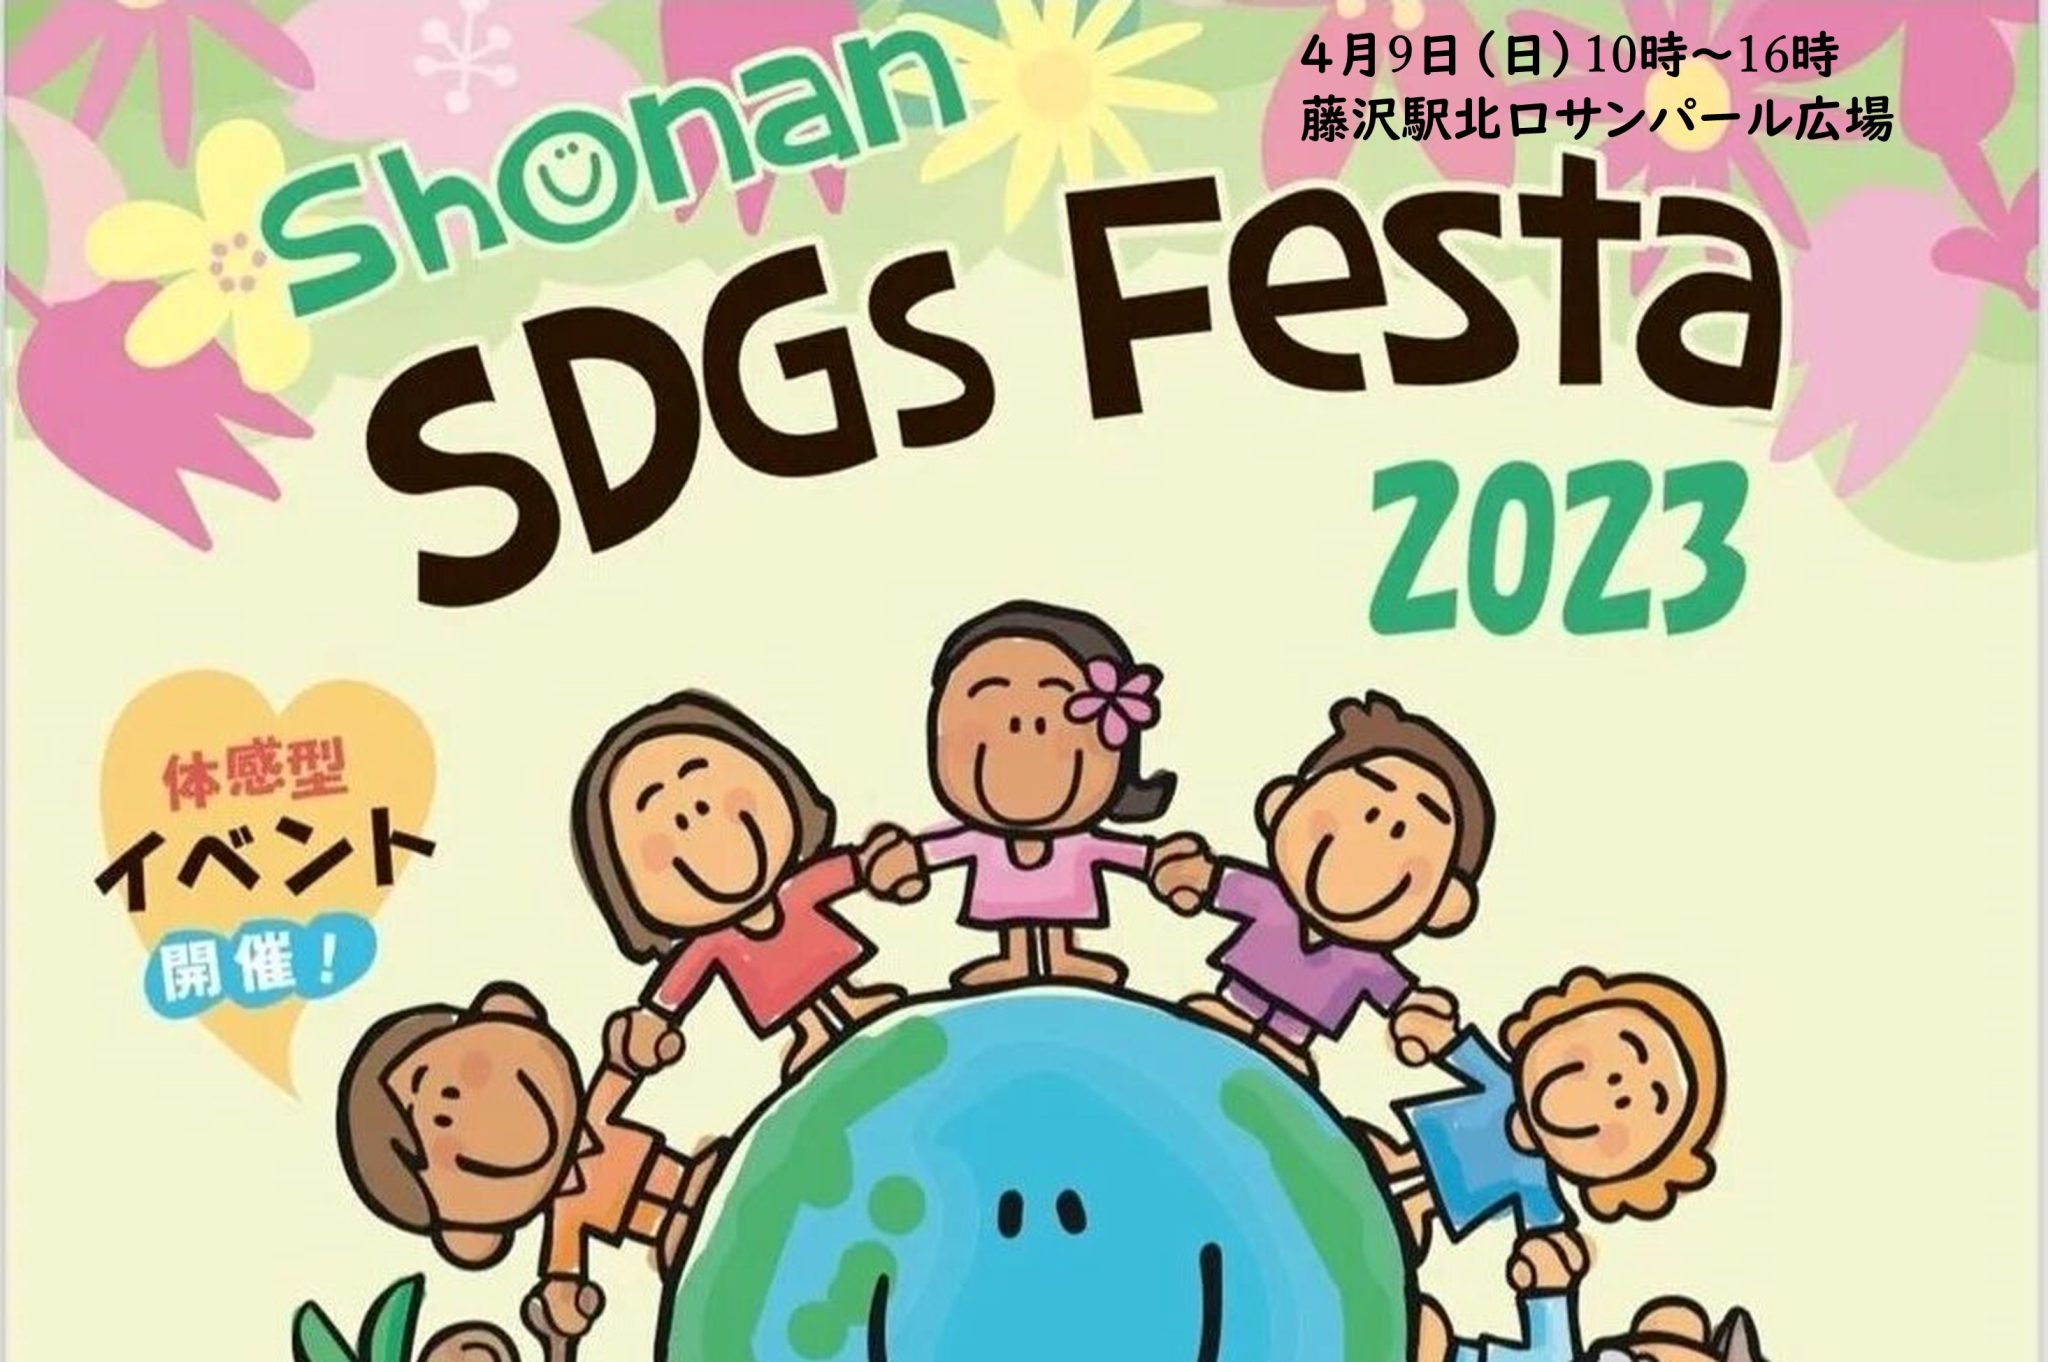 4月9日　日曜日　Shonan SDGs Festa 2023出展までもう少し